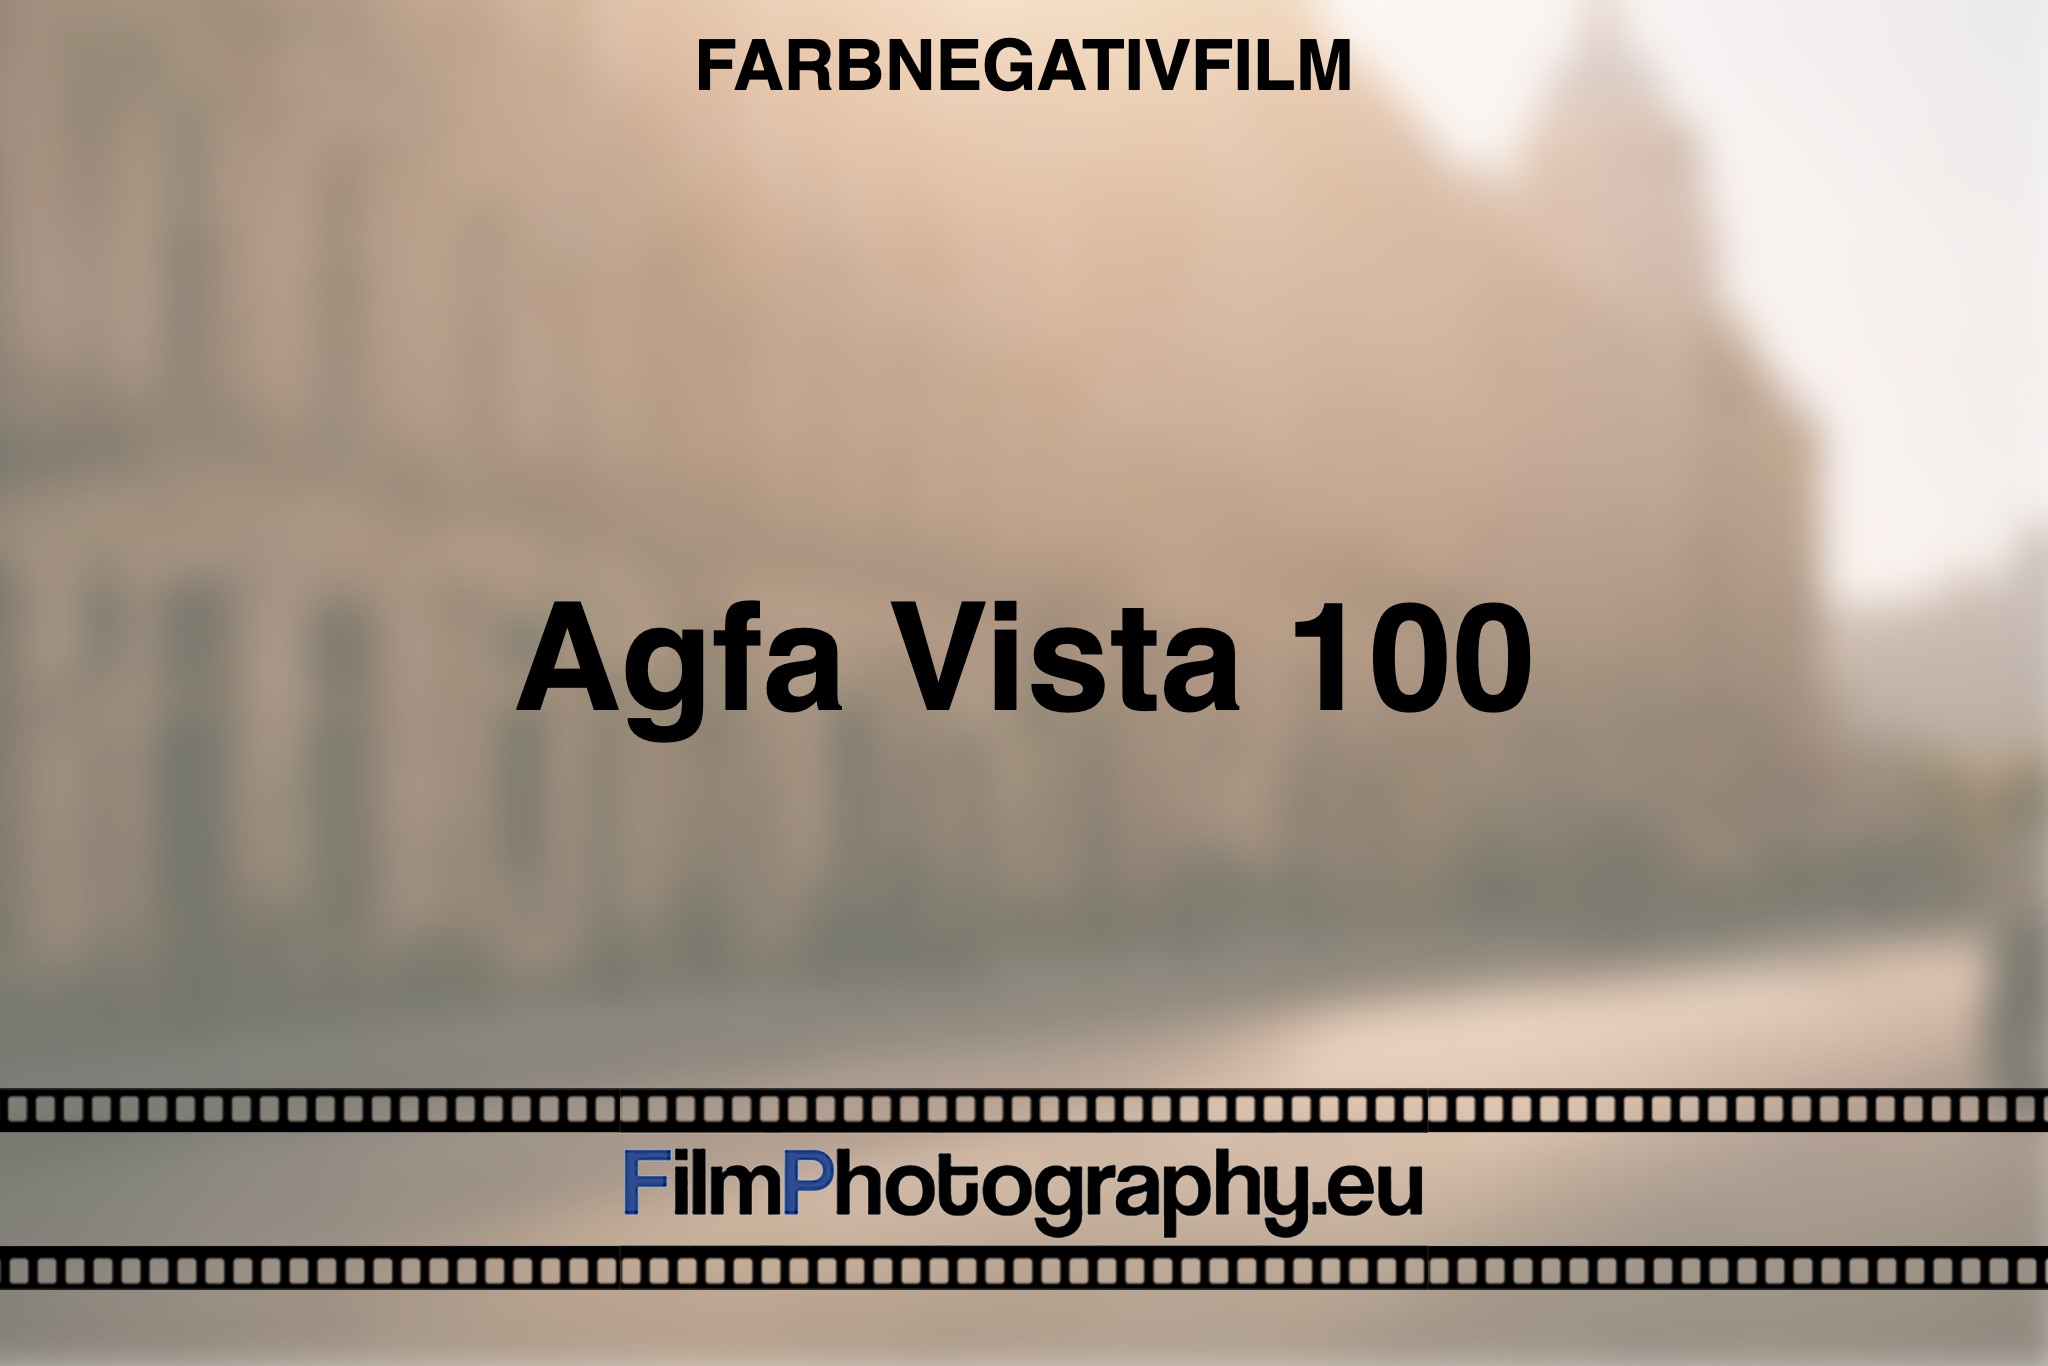 agfa-vista-100-farbnegativfilm-bnv